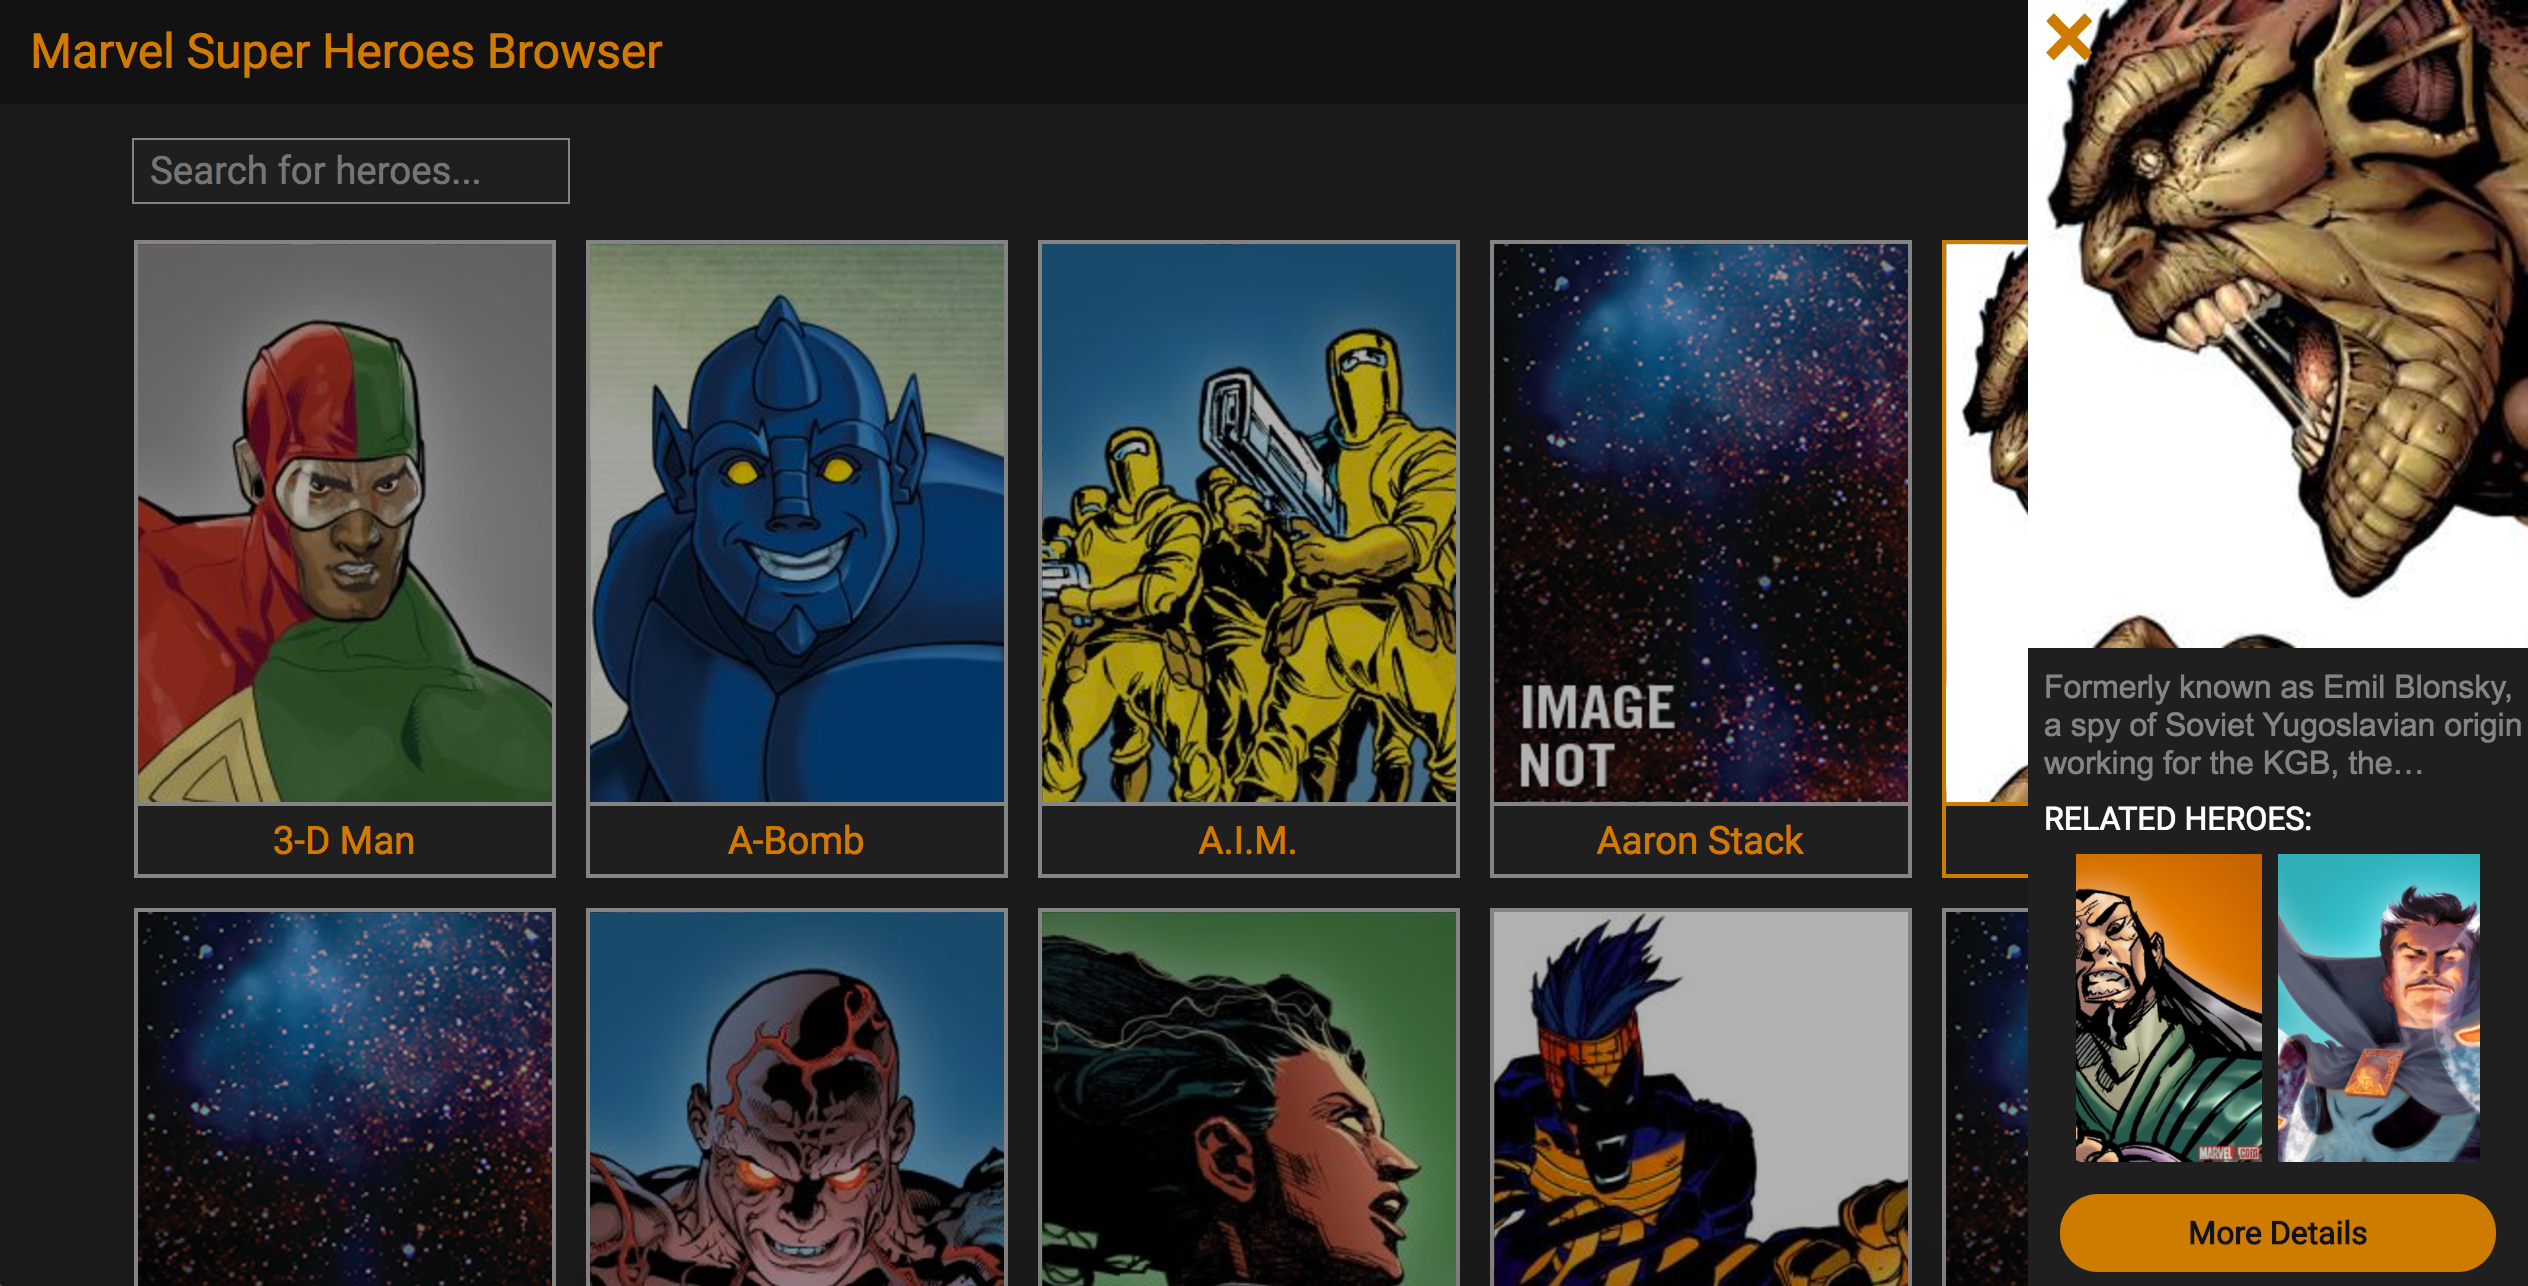 Marvel Super Heroes Browser